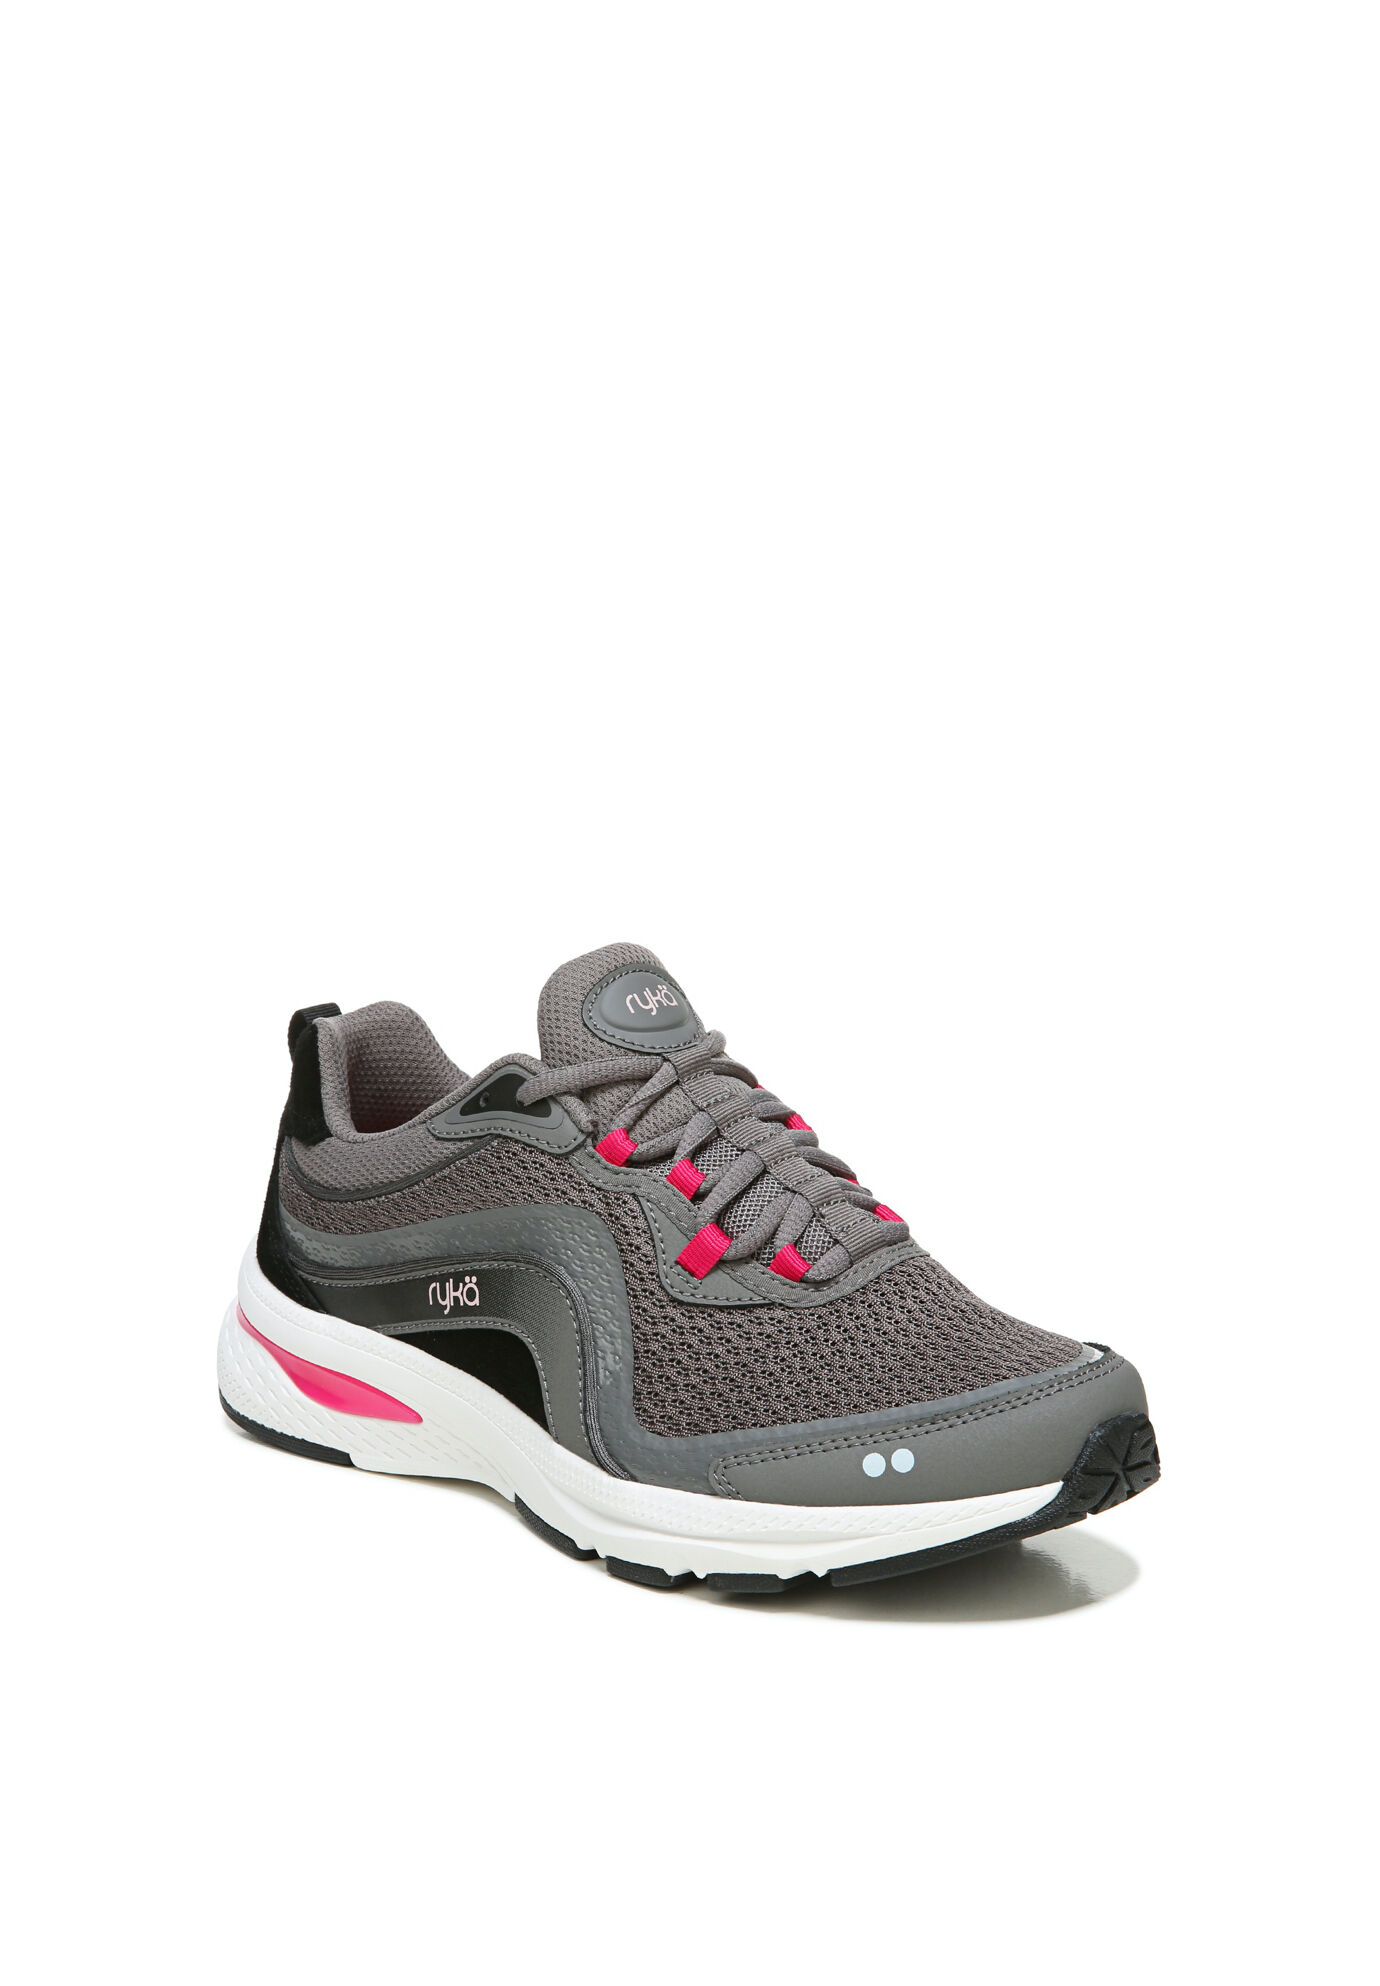 Wide Width Women's Belong Sneakers by Ryka in Grey Pink (Size 6 W)